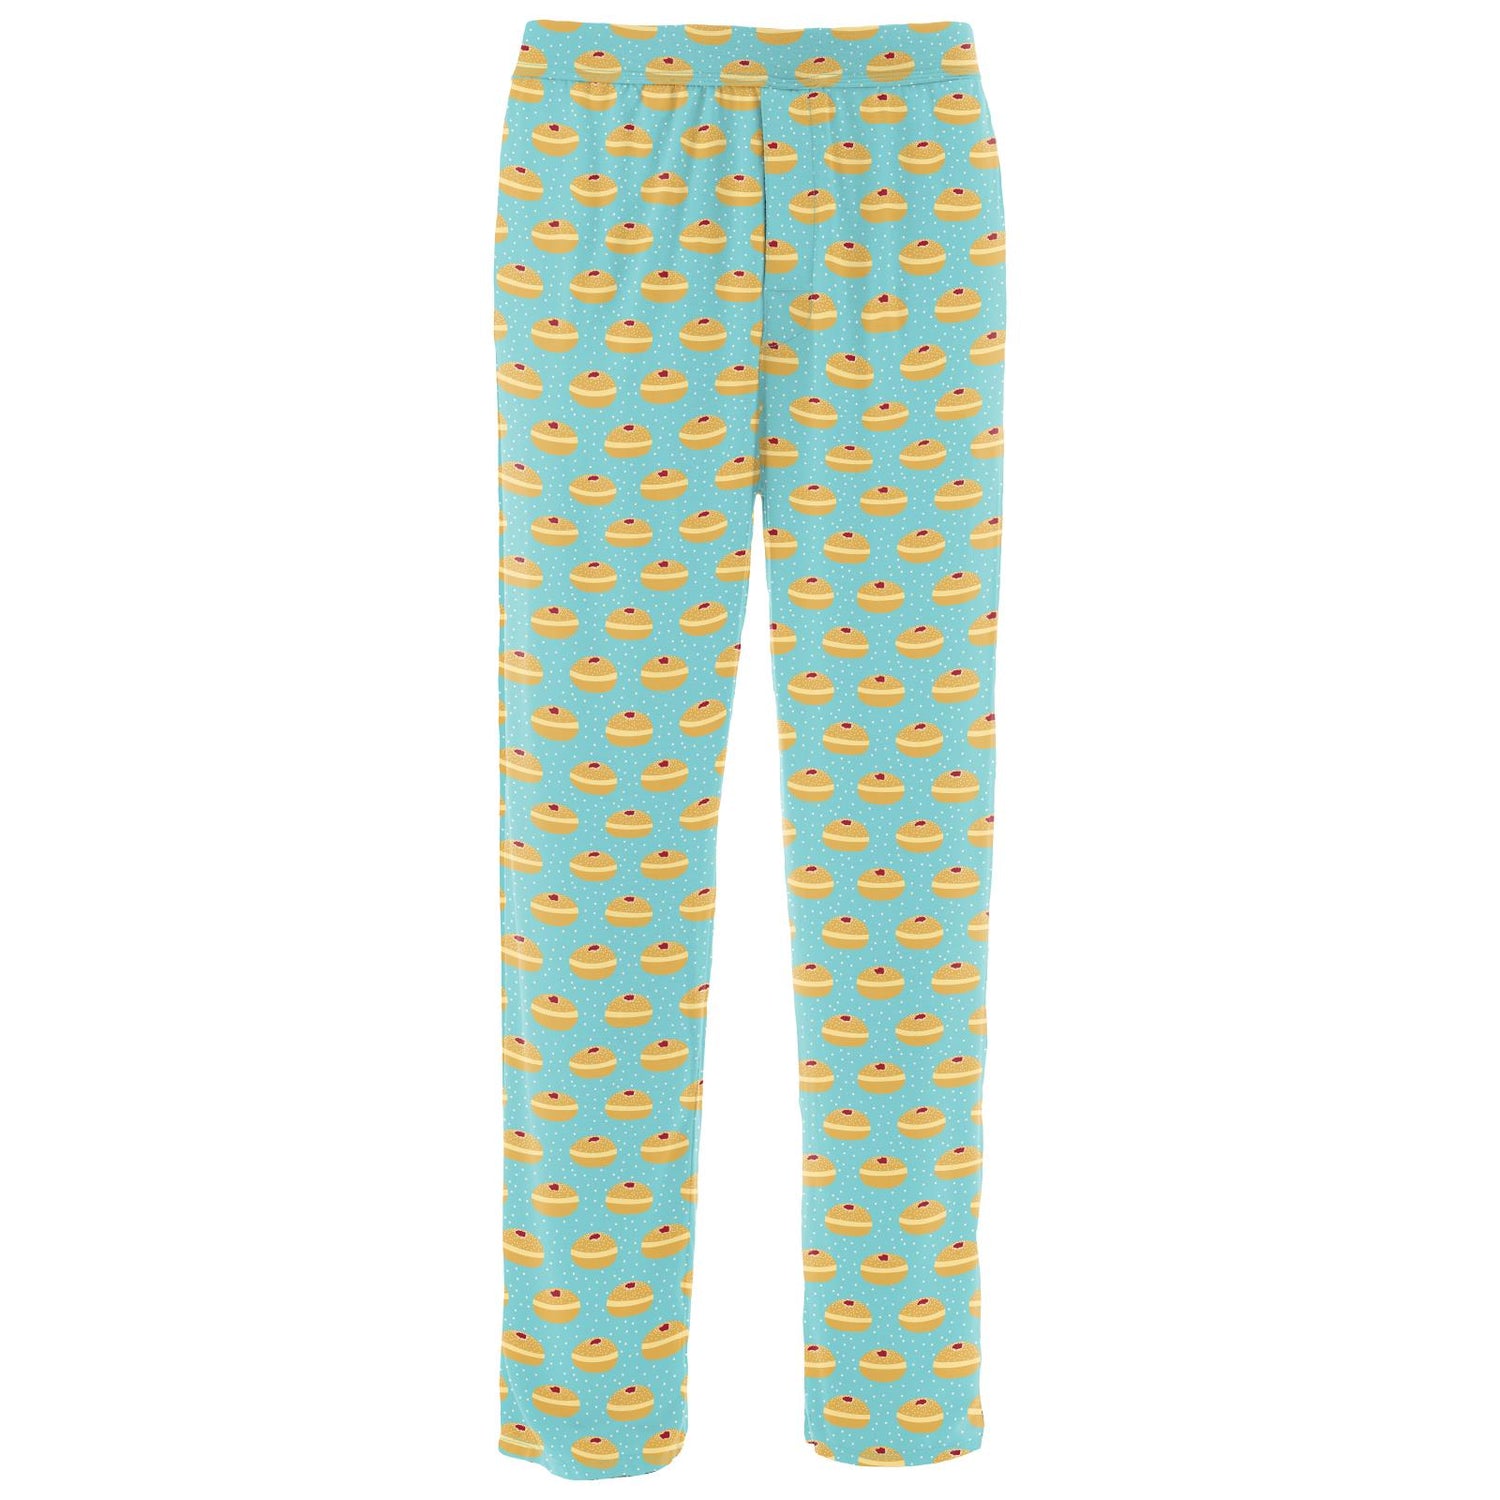 Men's Print Pajama Pants in Iceberg Jelly Donuts